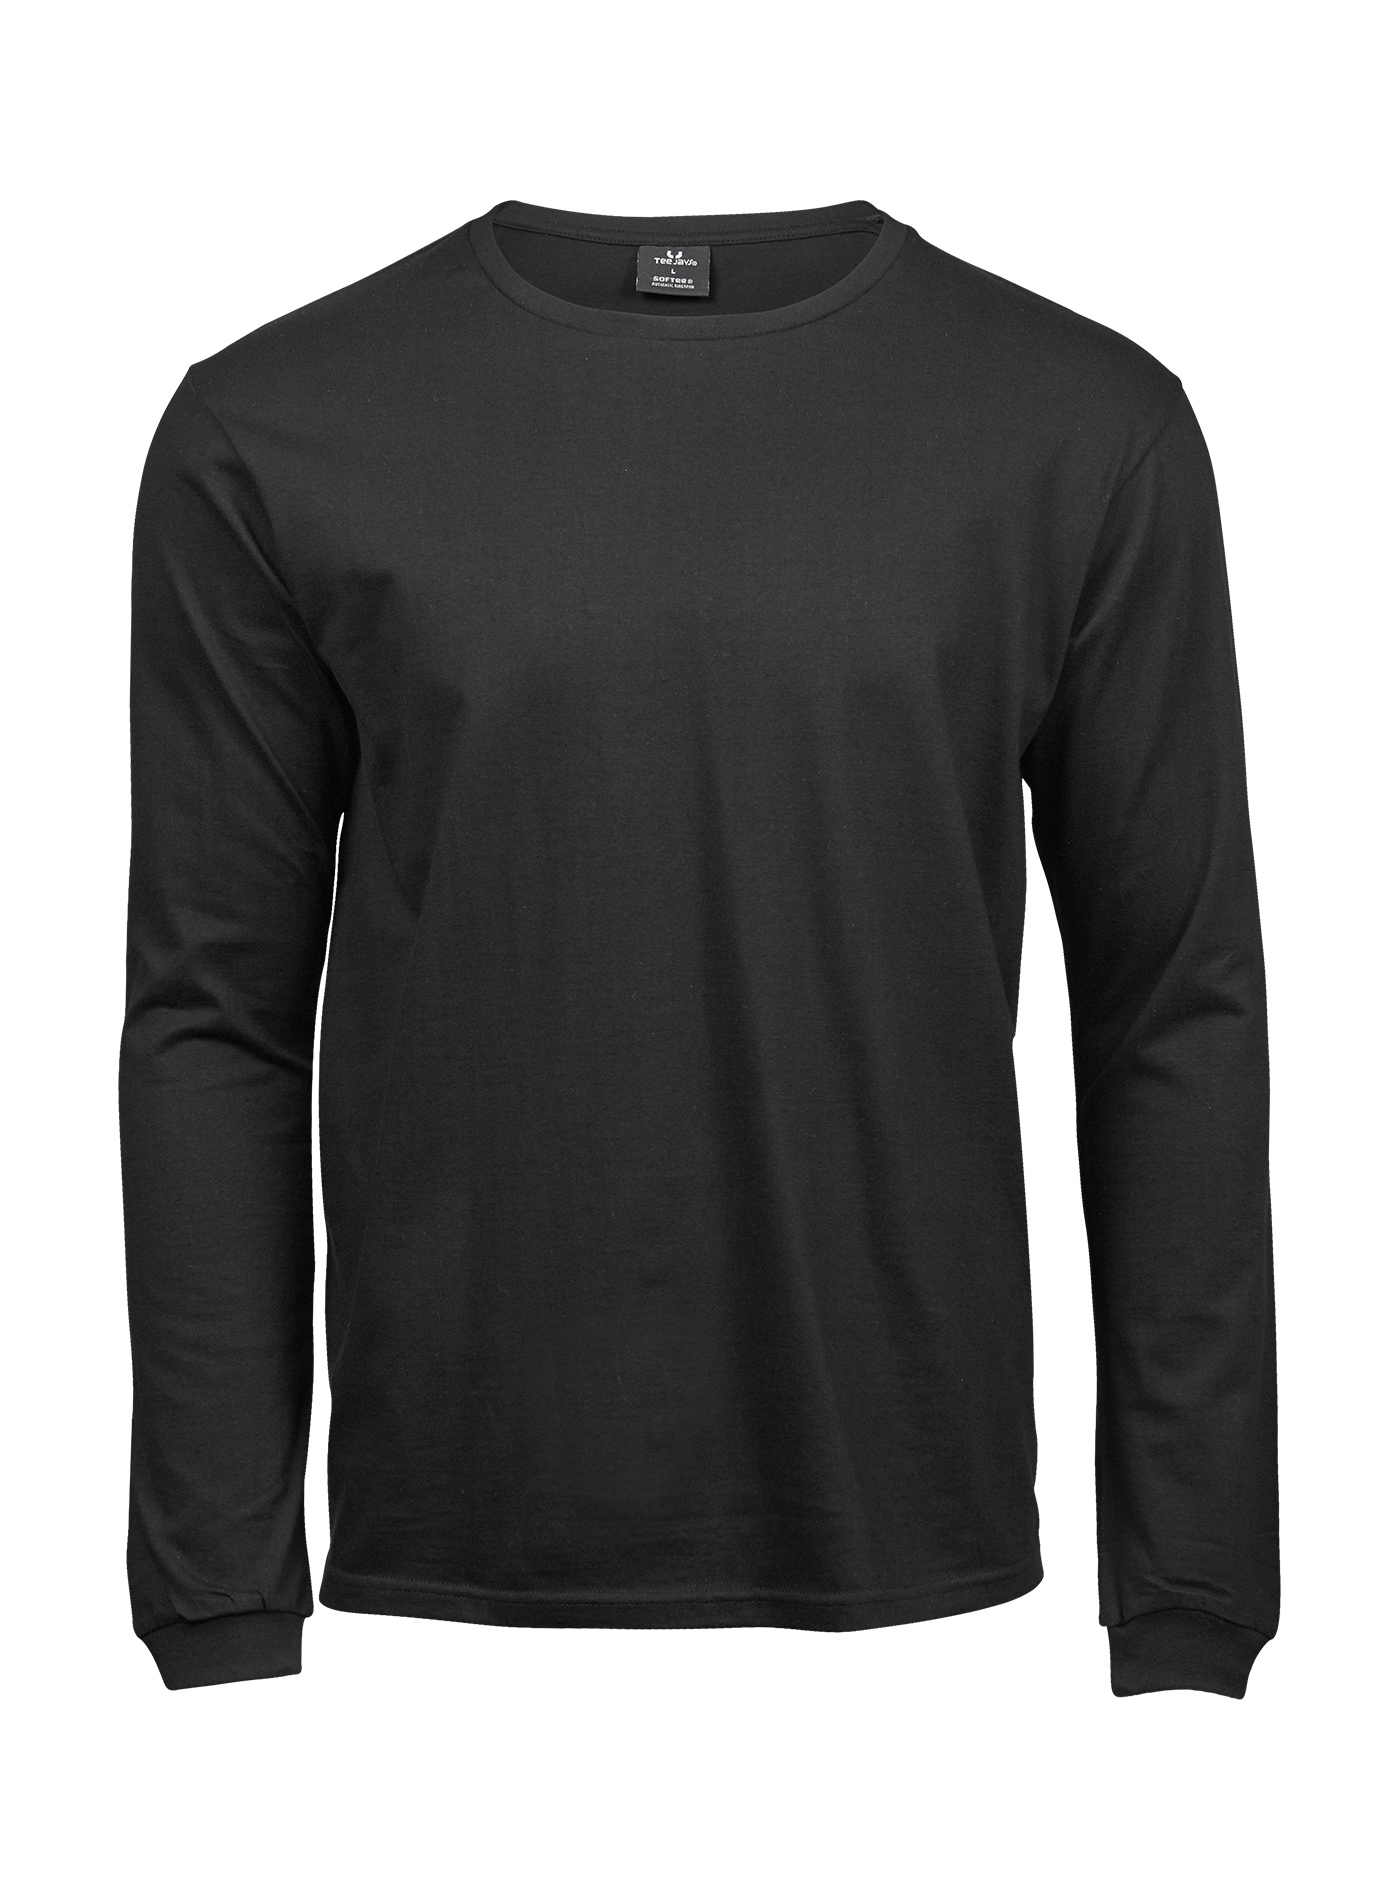 Pánské tričko s dlouhým rukávem Sof-Tee Jays - černá 4XL